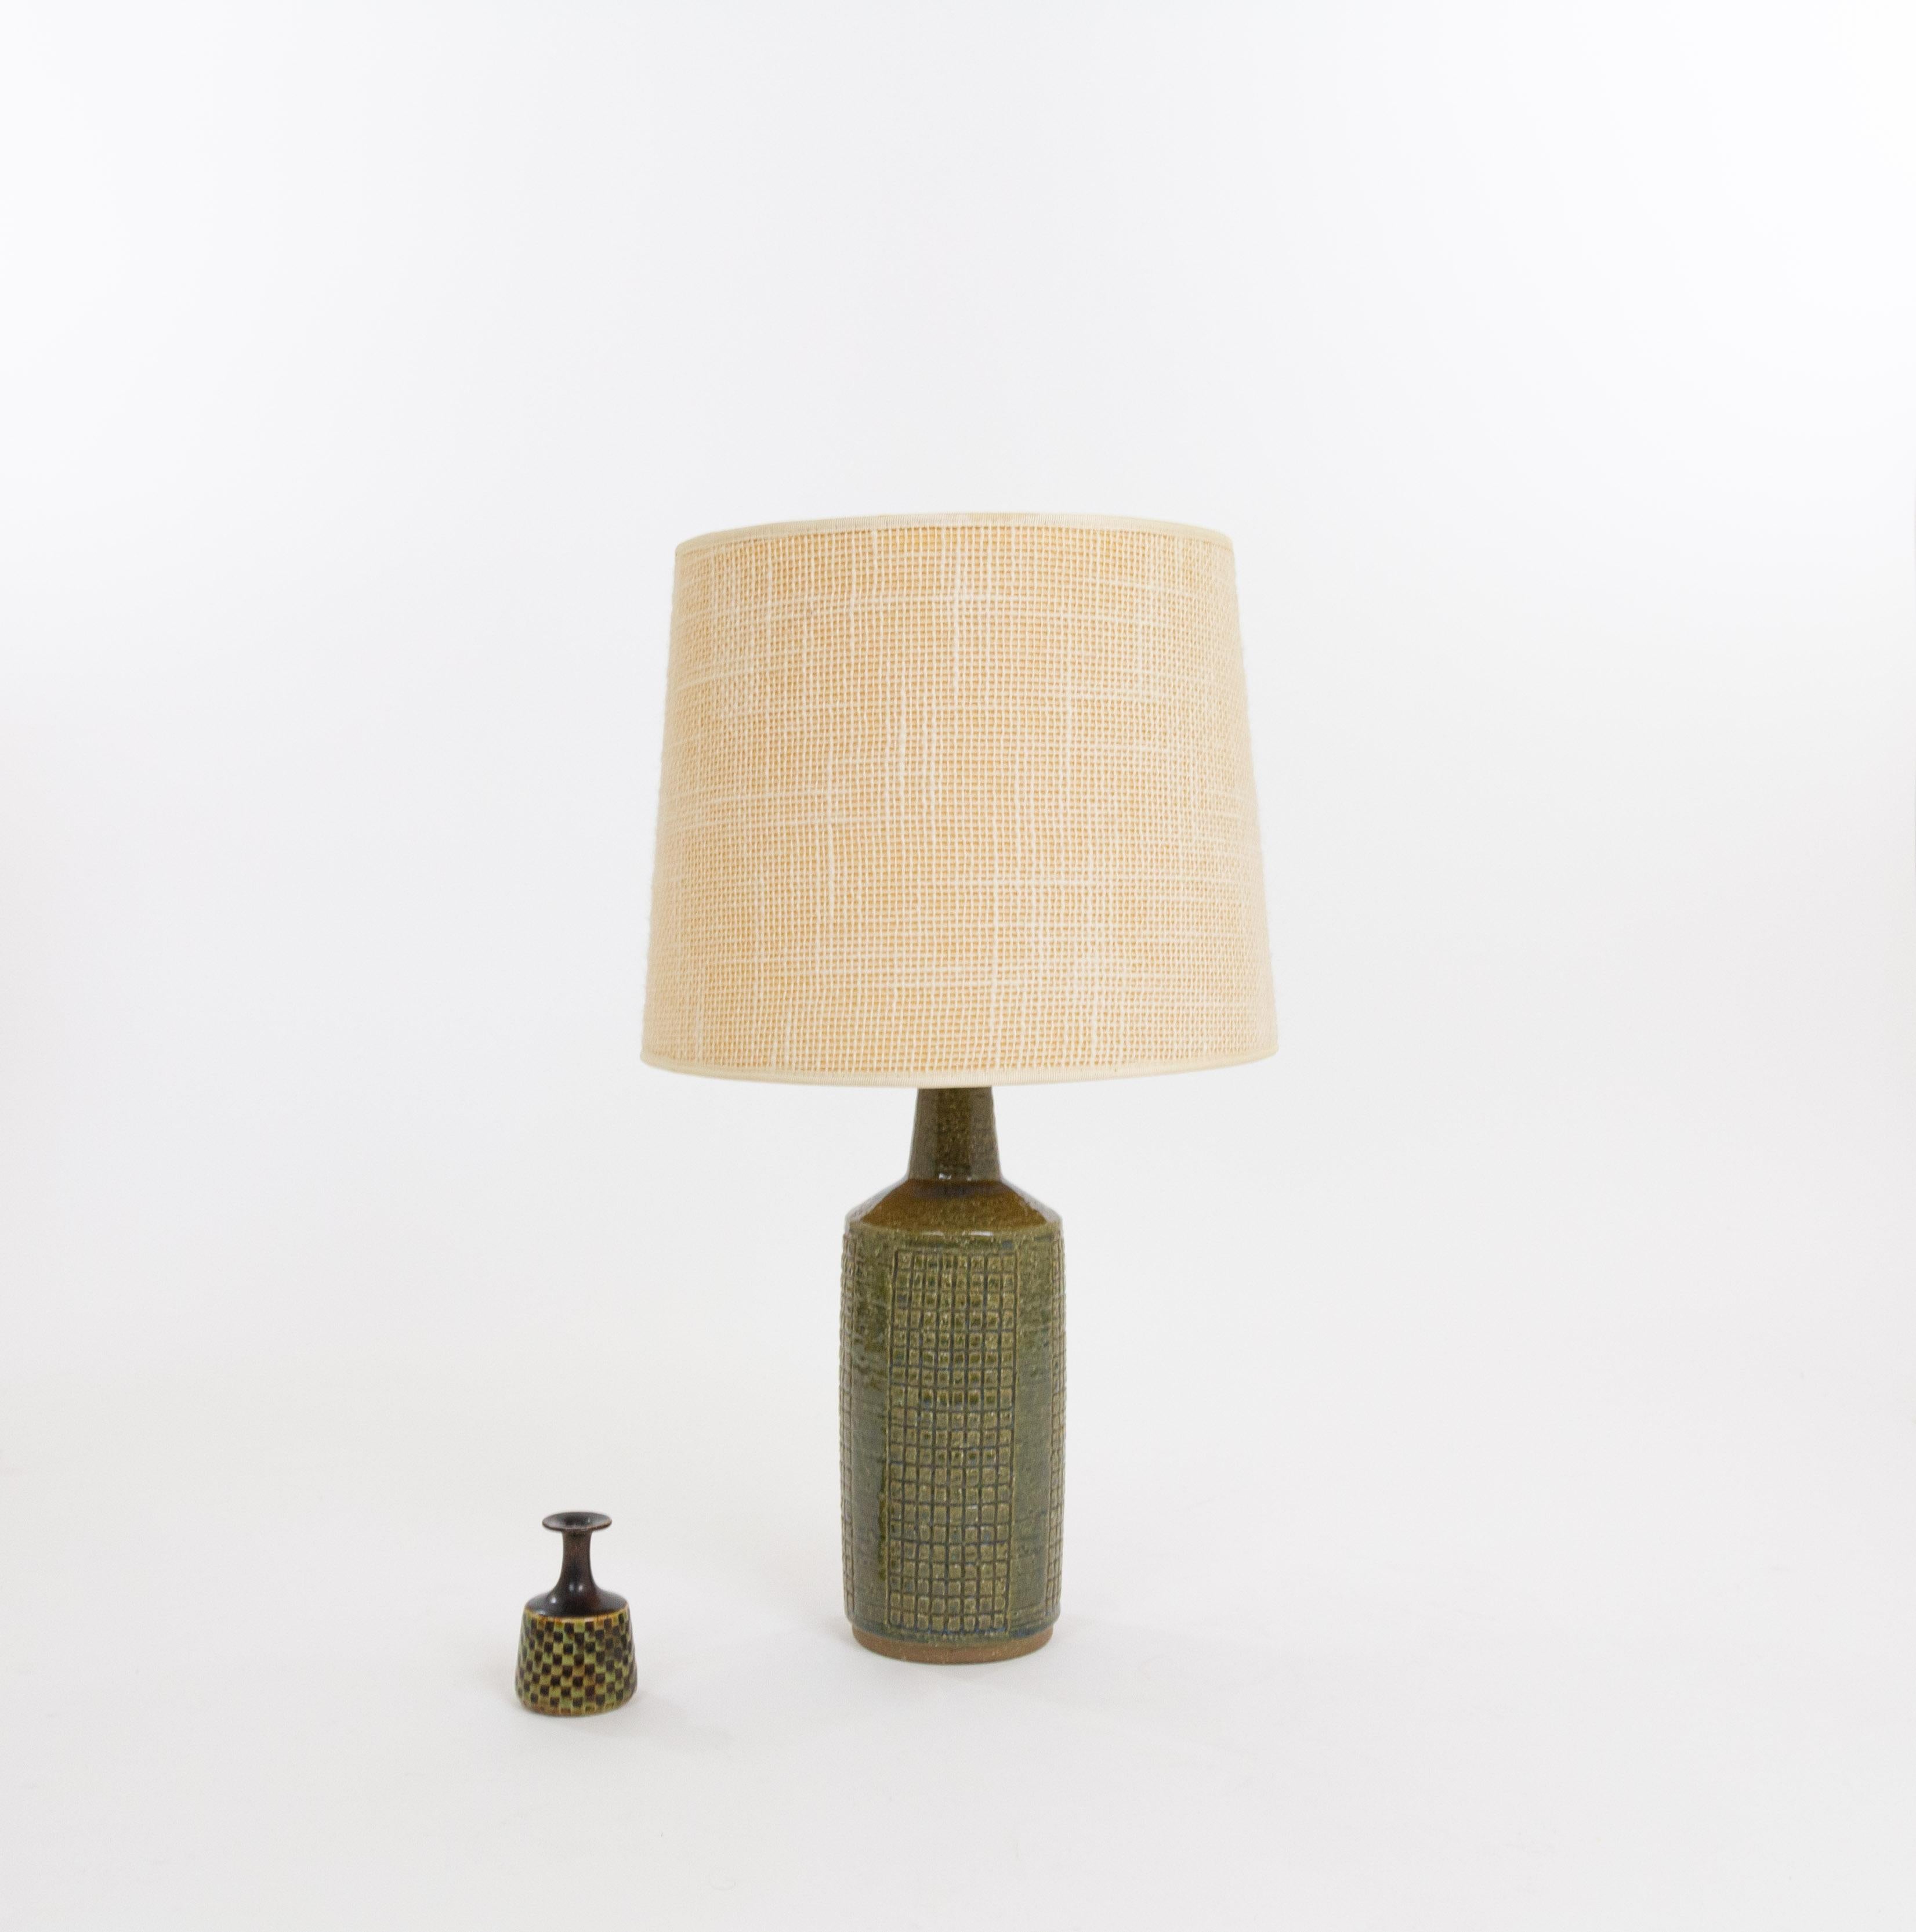 Lampe de table modèle DL/30 réalisée par Annelise et Per Linnemann-Schmidt pour Palshus dans les années 1960. La couleur de la base décorée à la main est vert olive. Il présente des motifs géométriques impressionnés.

La lampe est livrée avec son